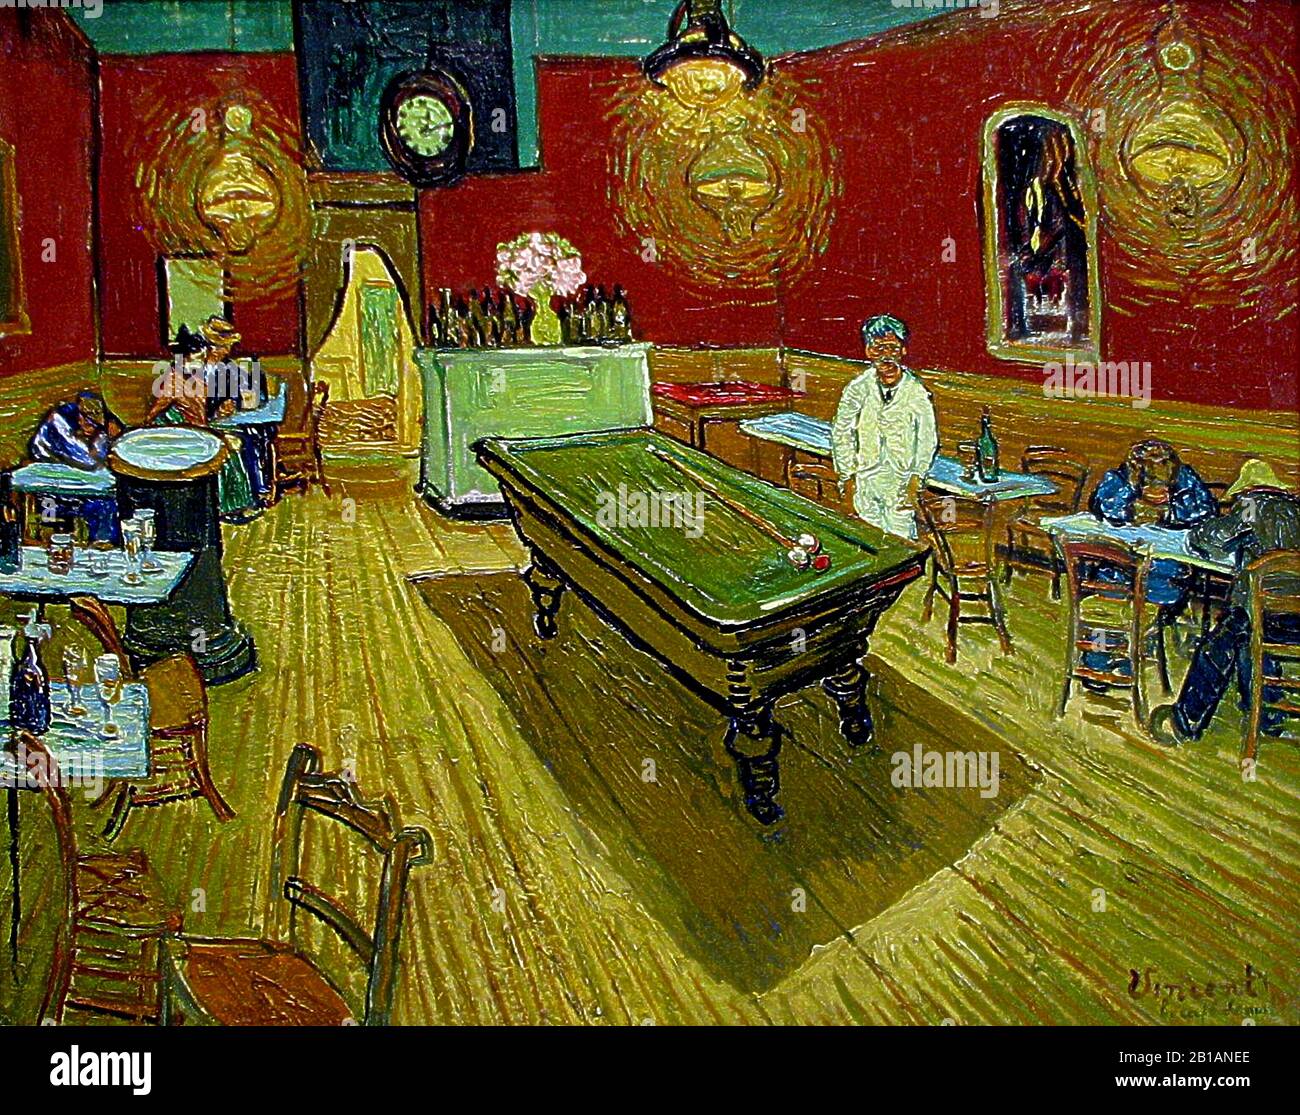 The Night Cafe, 1888 - dipinto di Vincent van Gogh - Immagine Di Alta risoluzione e qualità Foto Stock